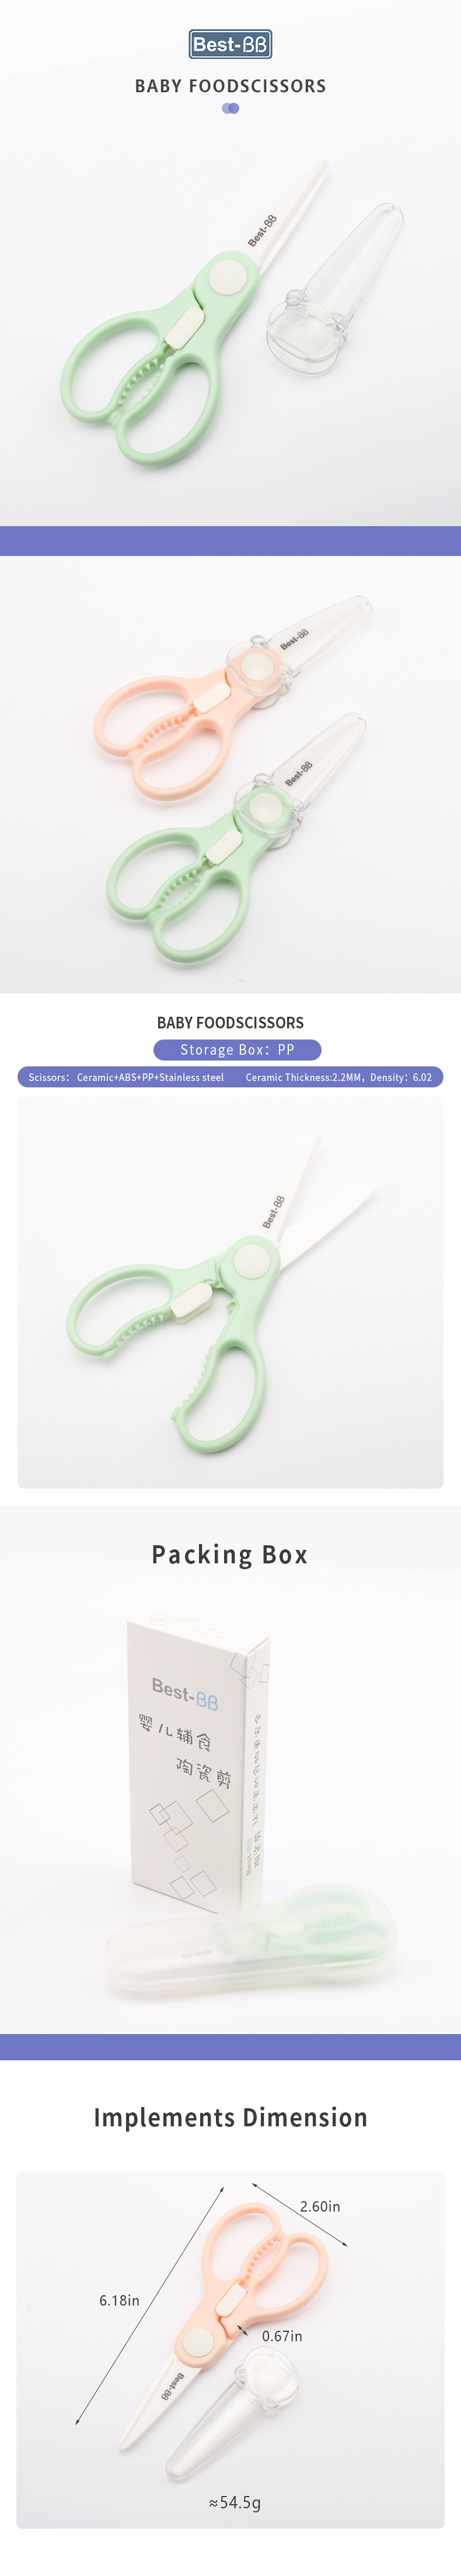 baby food scissors